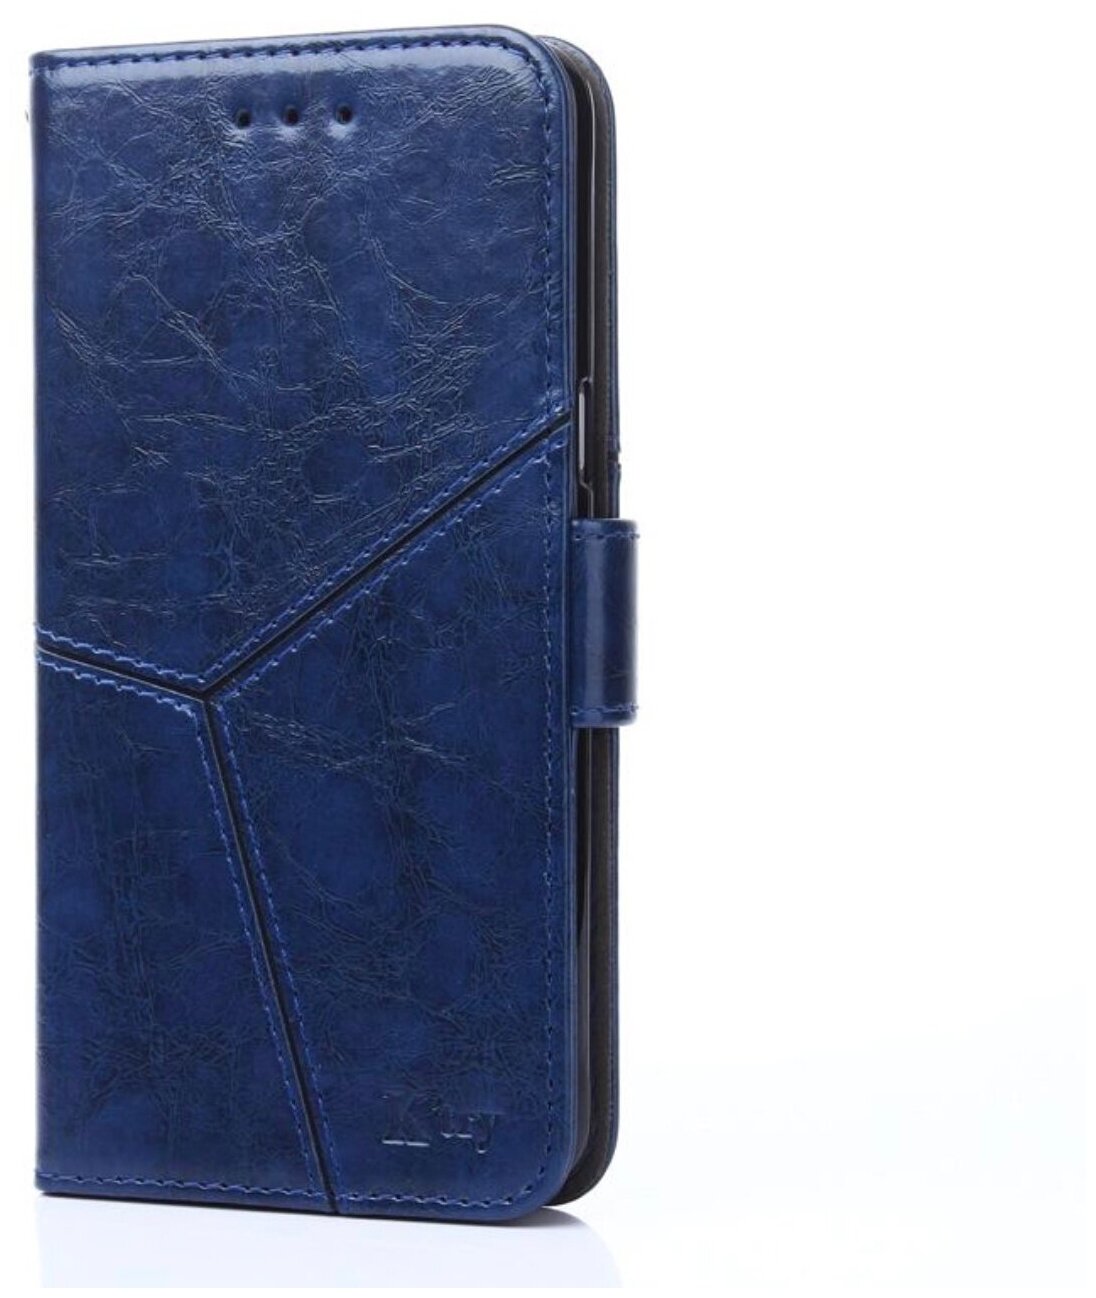 Чехол-книжка Чехол. ру для Xiaomi Redmi Note 6 / Note 6 Pro прошитый по контуру с необычным геометрическим швом синий